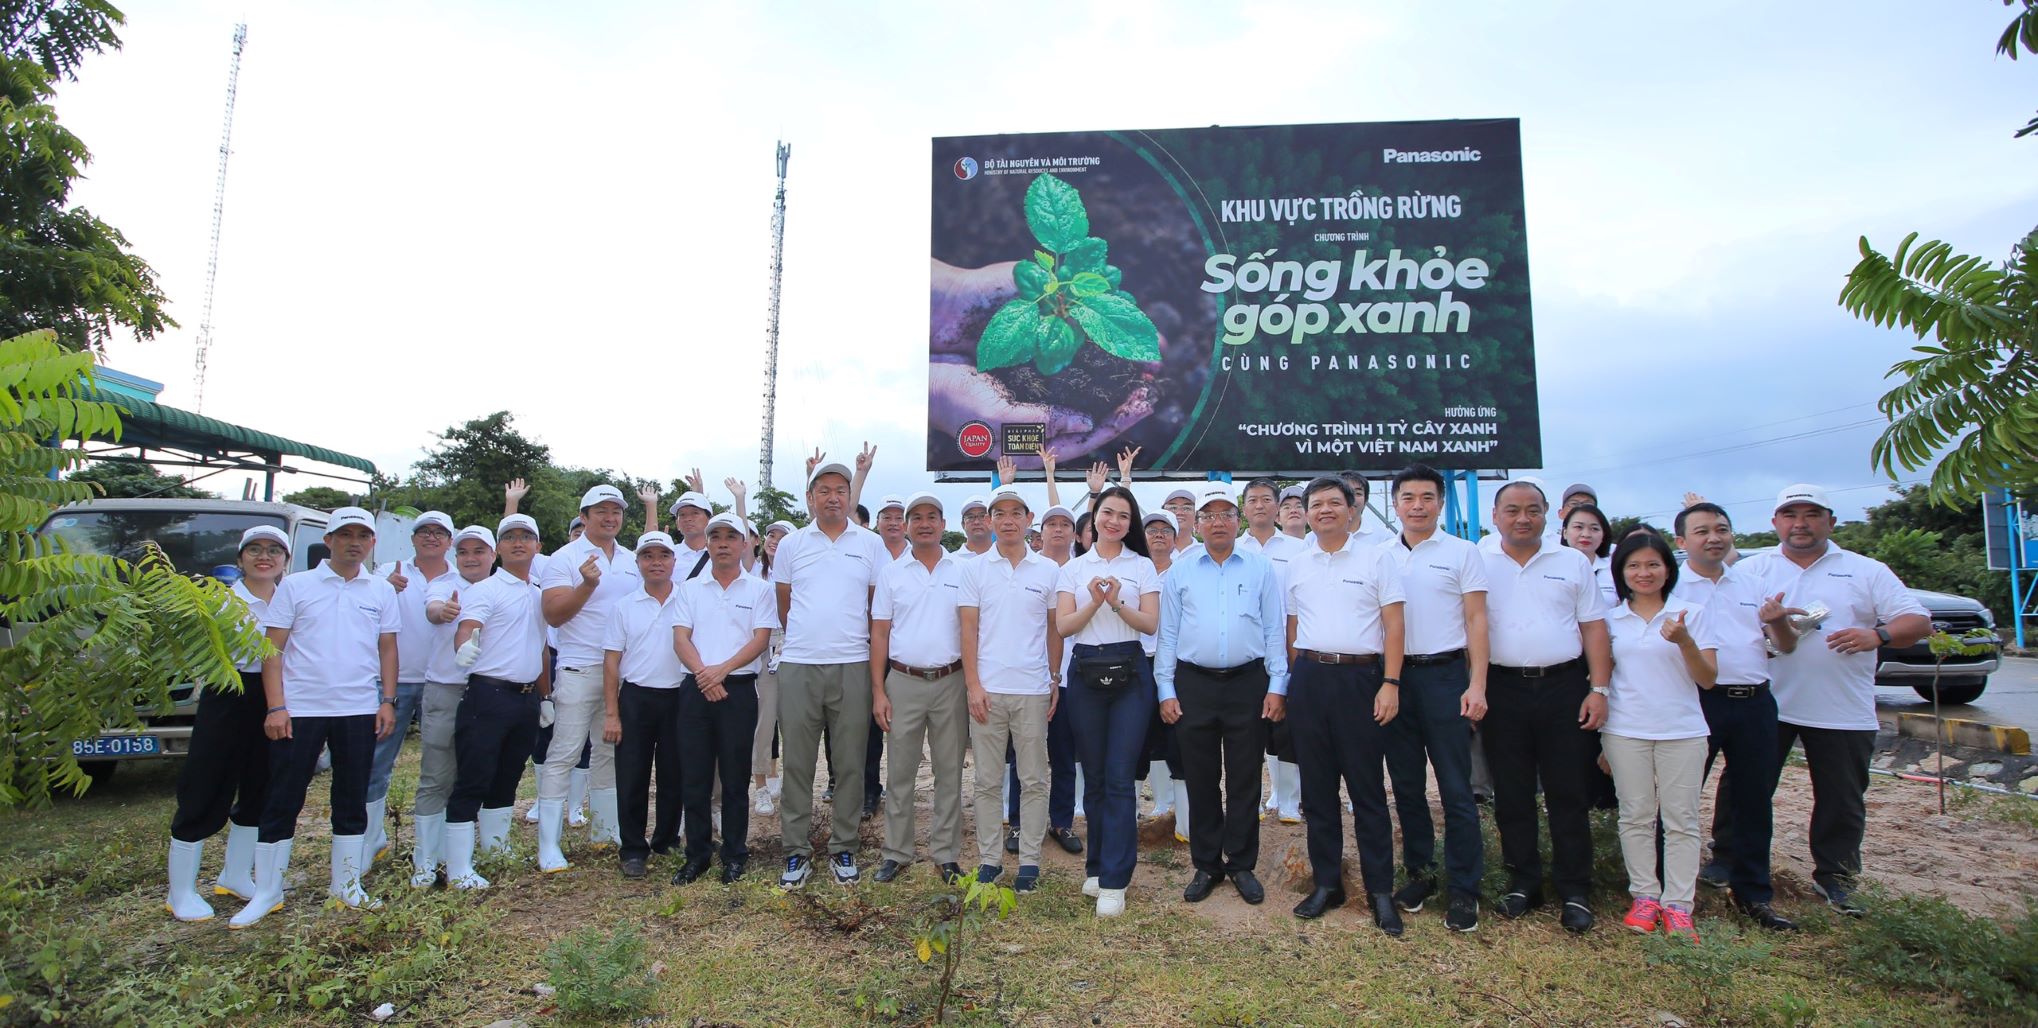 Panasonic khởi động chương trình trồng rừng “Sống khỏe góp xanh” chung sức trồng 1 tỷ cây xanh – vì một Việt Nam xanh - 1